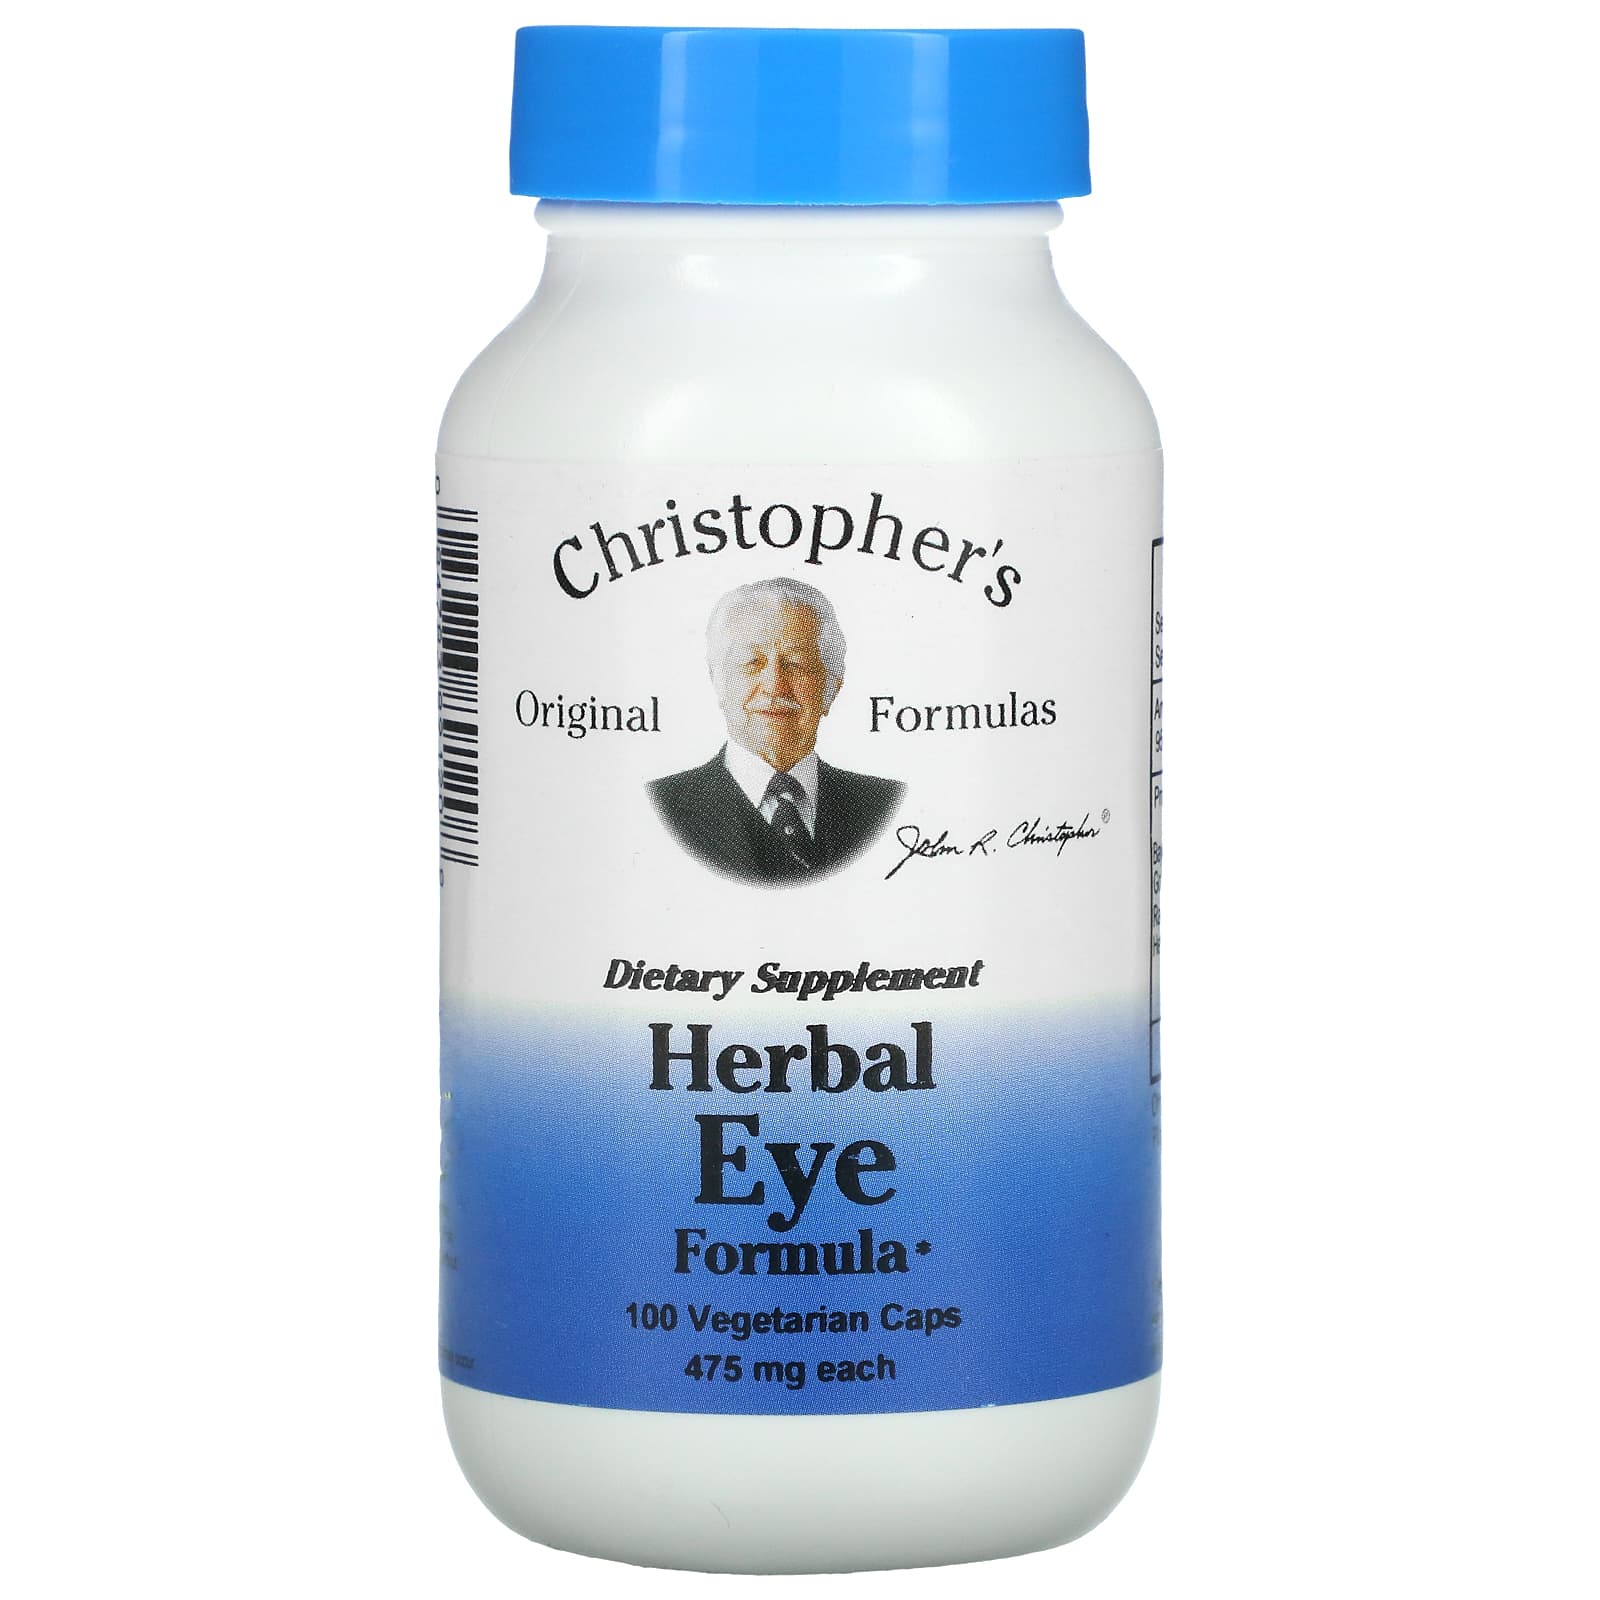 Christopher's Original Formulas Травяная формула для глаз 475 мг в каждой 100 растительных капсул